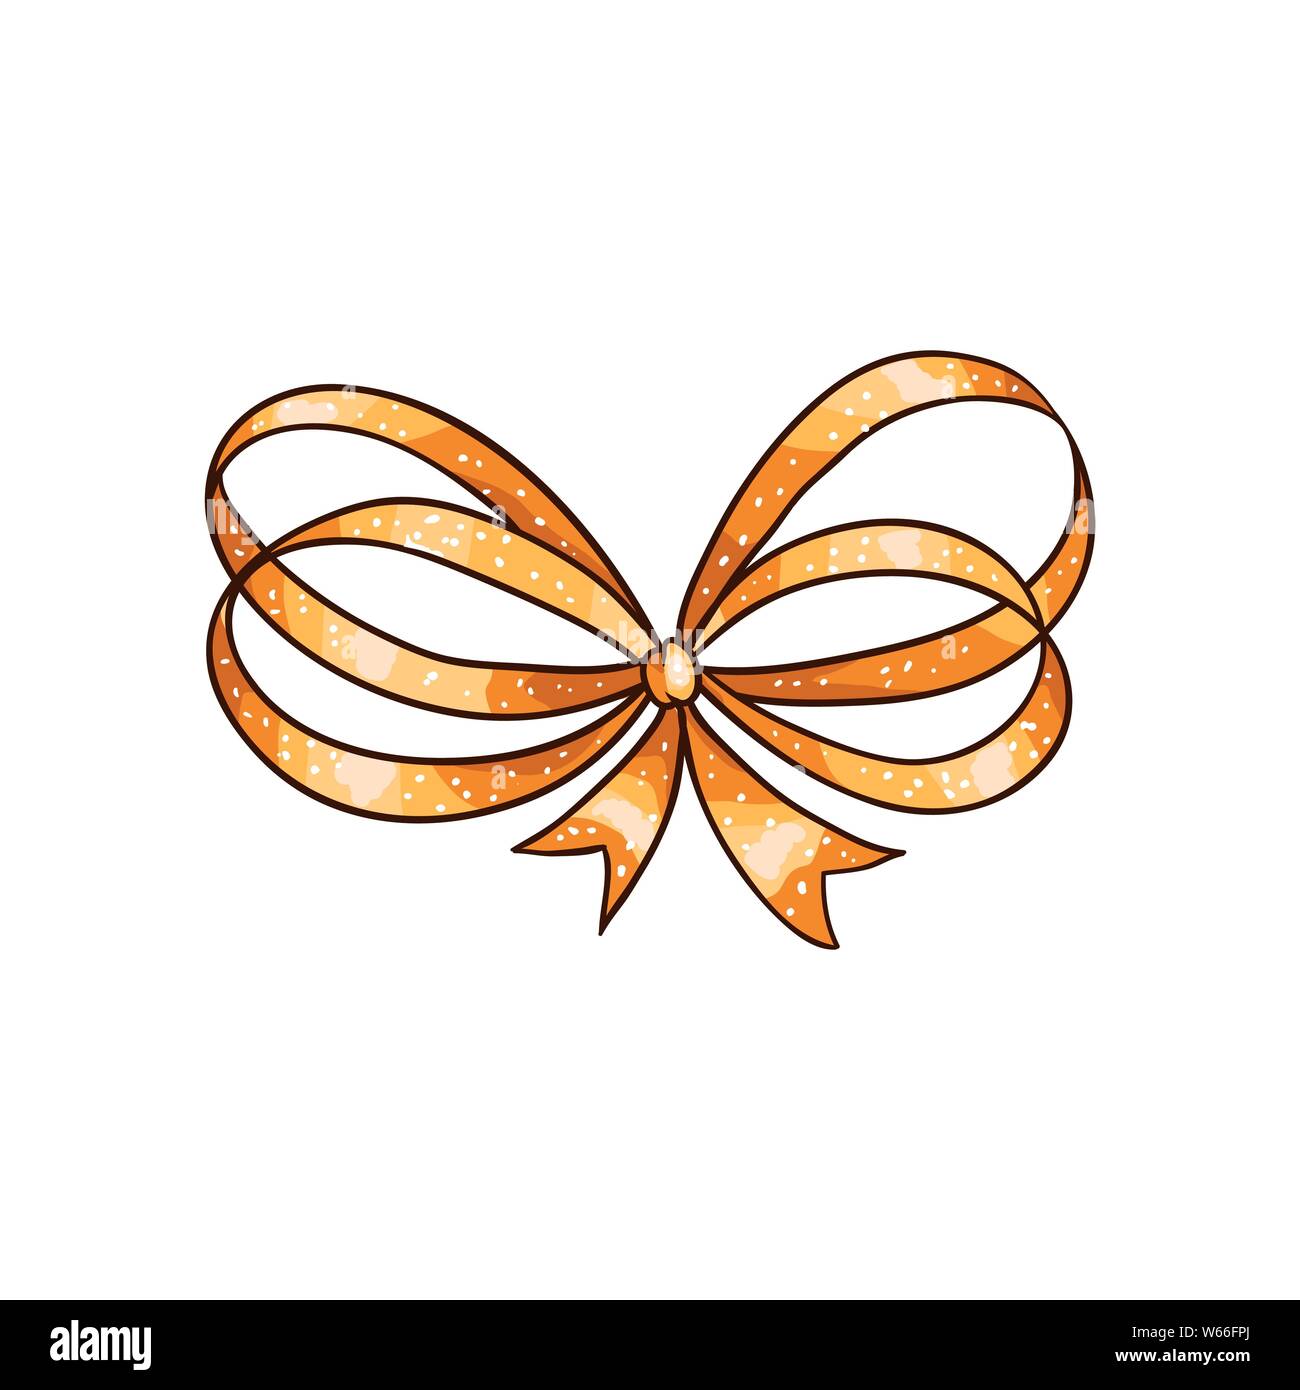 Golden bug Hand gezeichnet Vektor isoliert Abbildung. Ribbon Knoten cartoon Zeichnung auf weißem Hintergrund. Bowknot doodle Sticker Weihnachten clipart. Bow-tie-farbigen Grußkarte design Element Stock Vektor